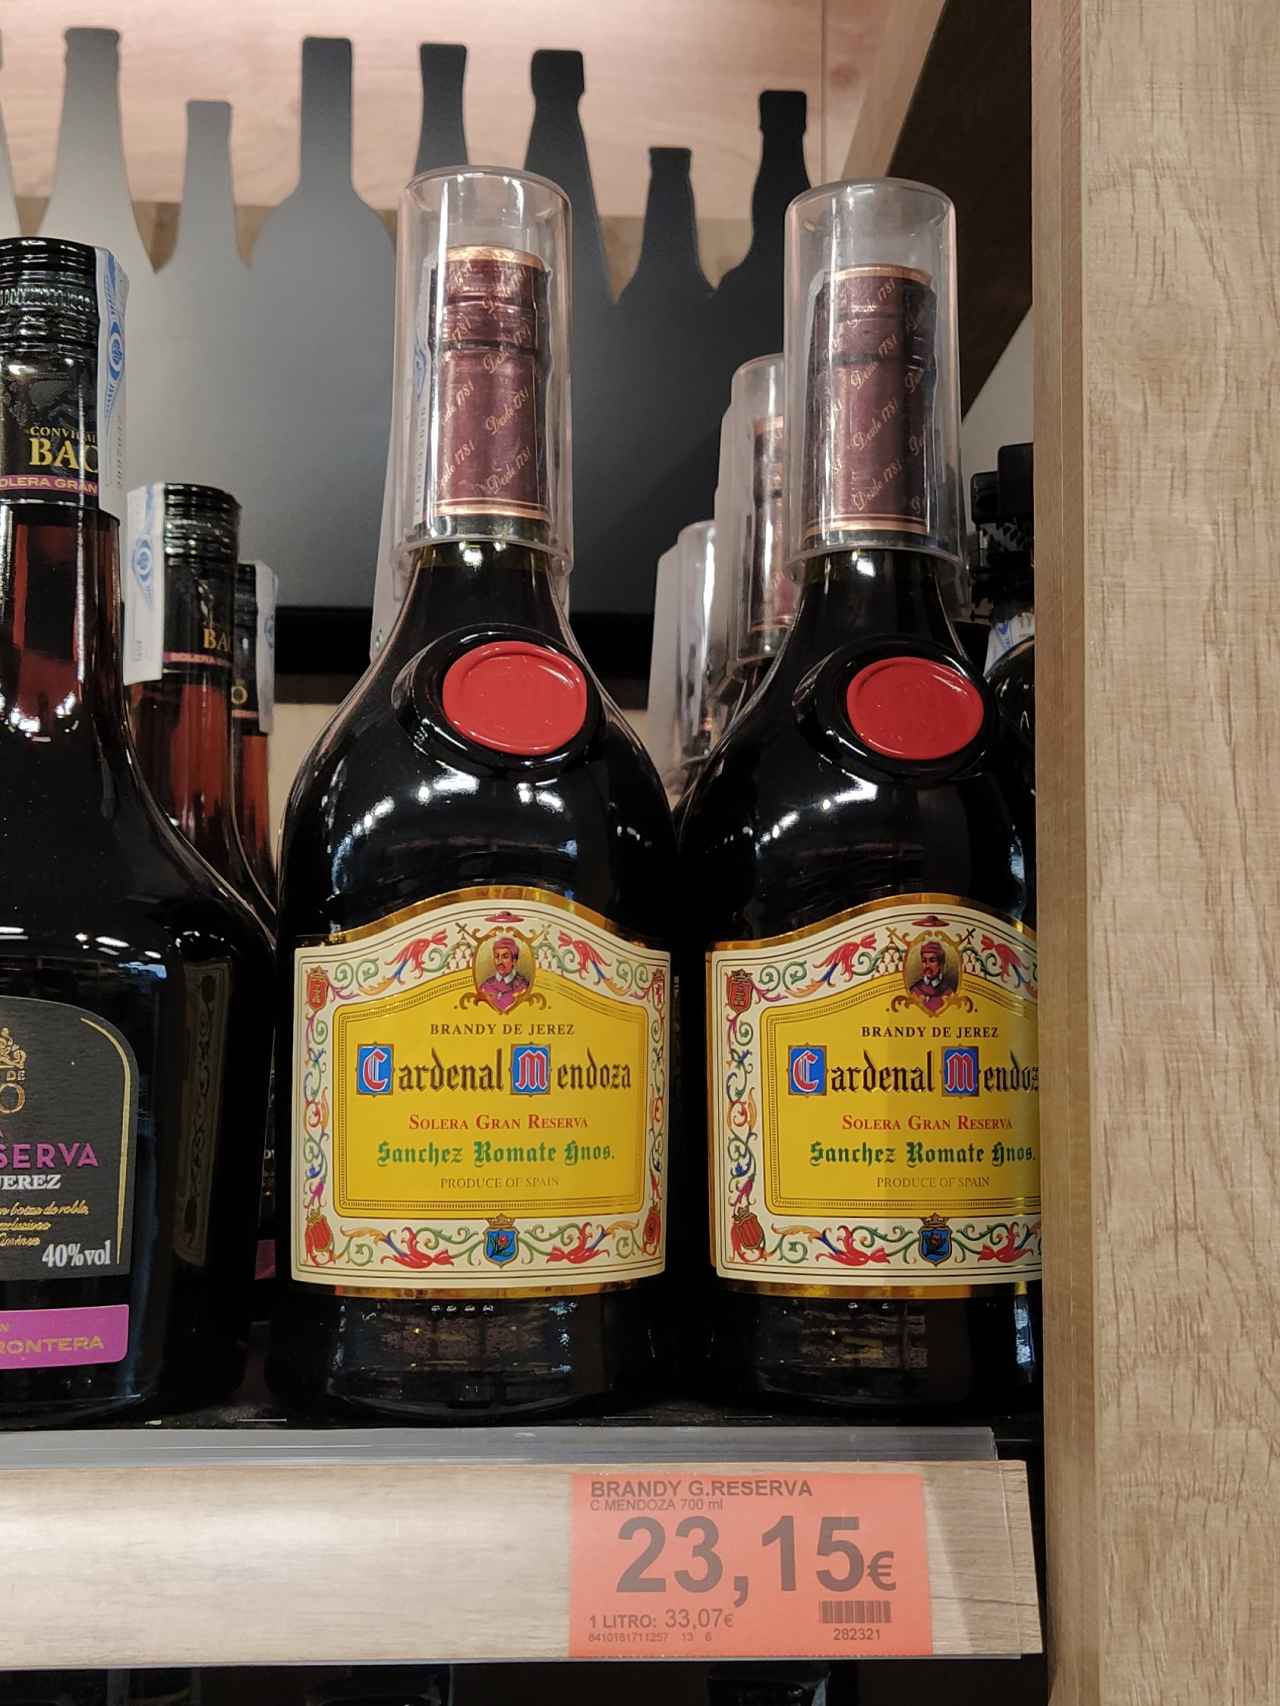 El Brandy de Jerez solera gran reserva Cardenal Mendoza que cuesta 23,14 euros.